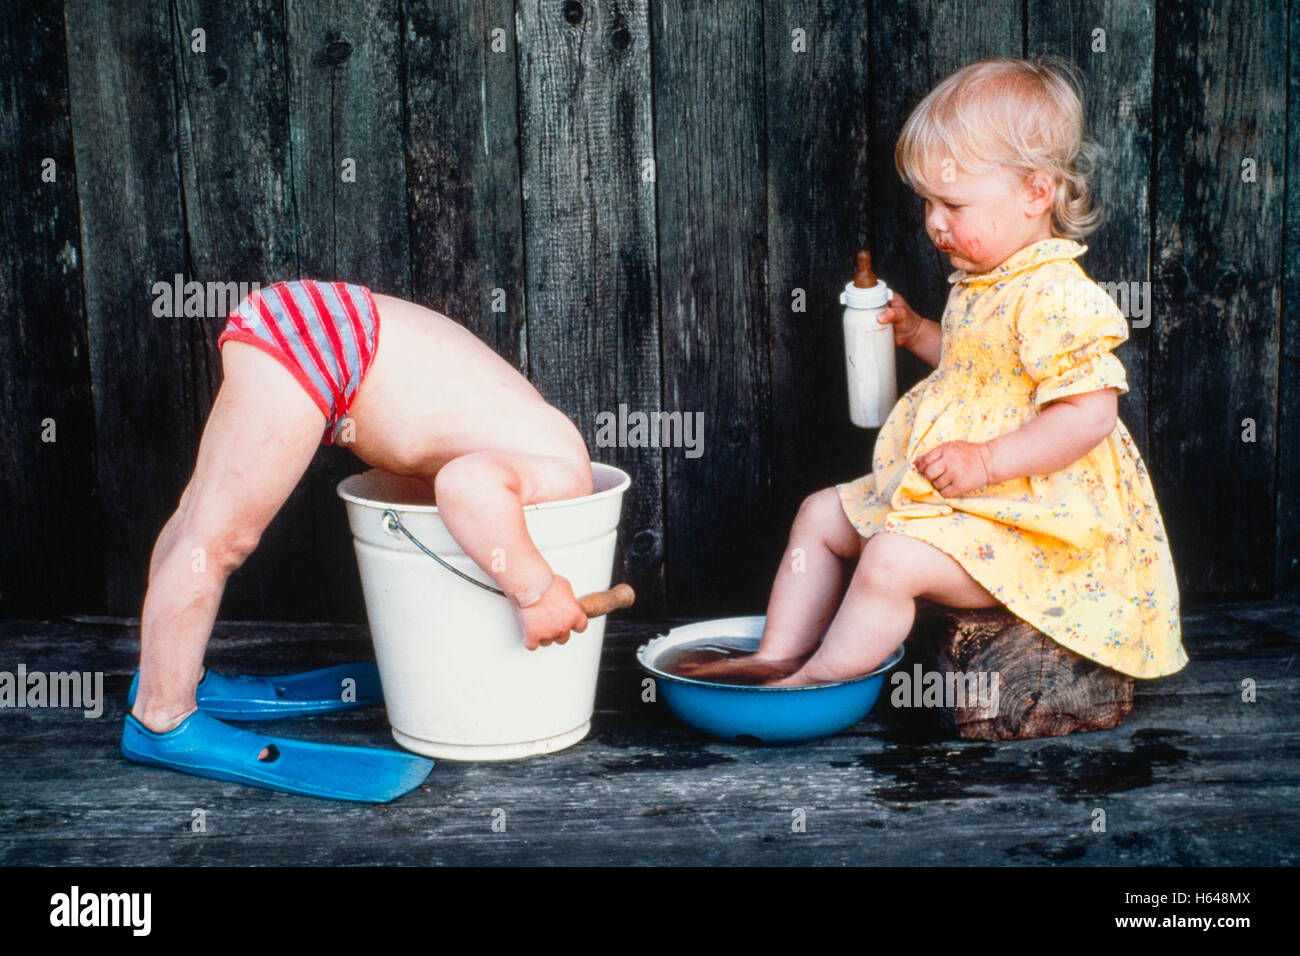 Drei Jahre alten Mädchen badet ihre Füße, junge steckt Kopf in Eimer,  Österreich Stockfotografie - Alamy